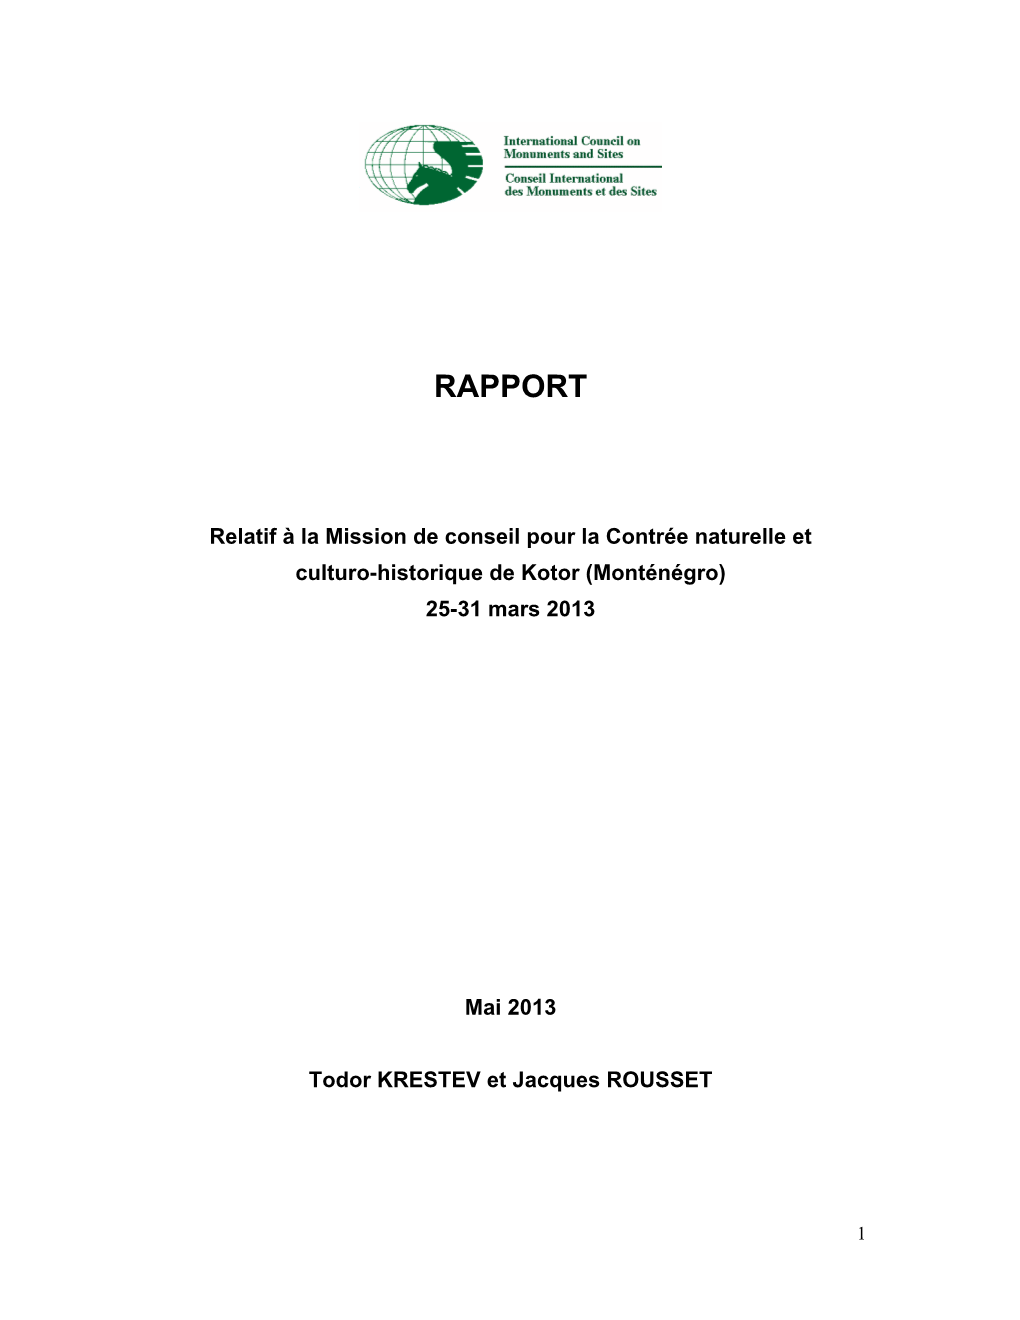 Rapport Relatif À La Mission De Conseil Pour La Contrée Naturelle Et Culturo-Historique De Kotor (Monténégro), 25-31 Mars 20